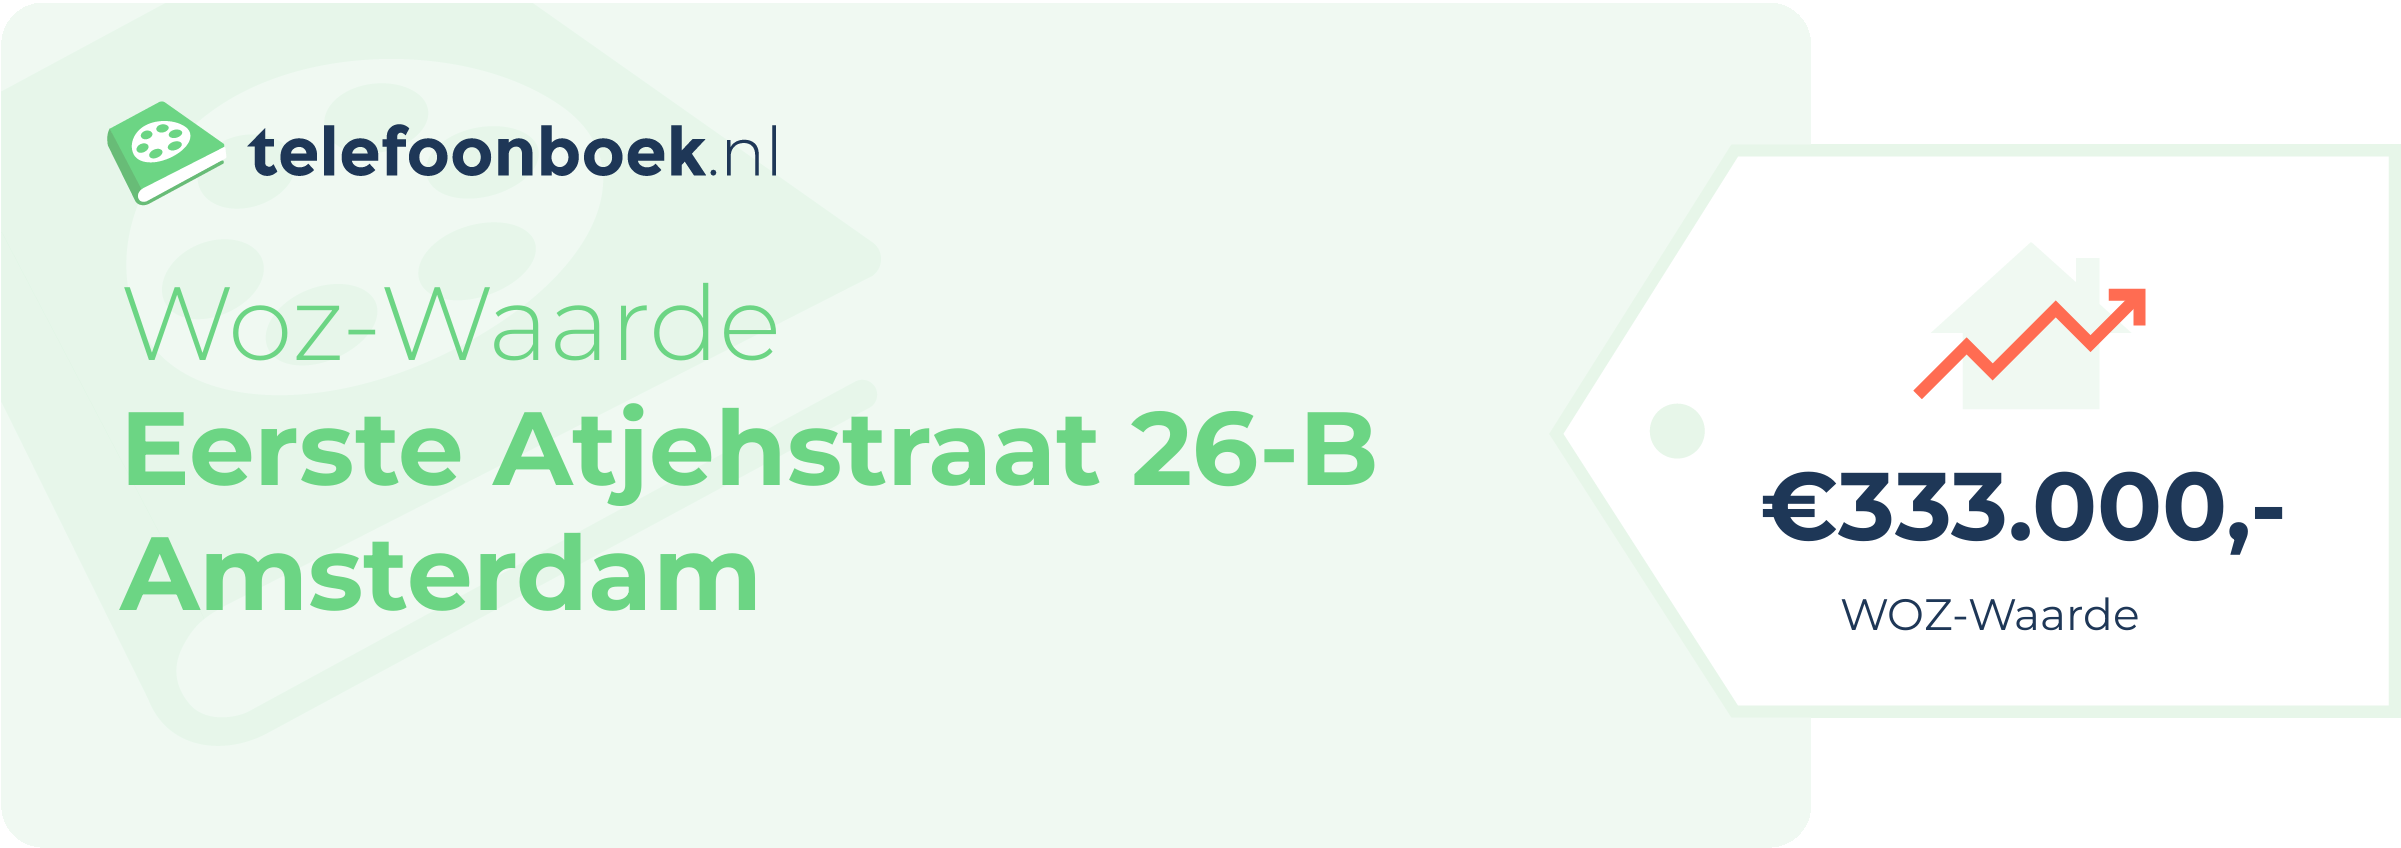 WOZ-waarde Eerste Atjehstraat 26-B Amsterdam